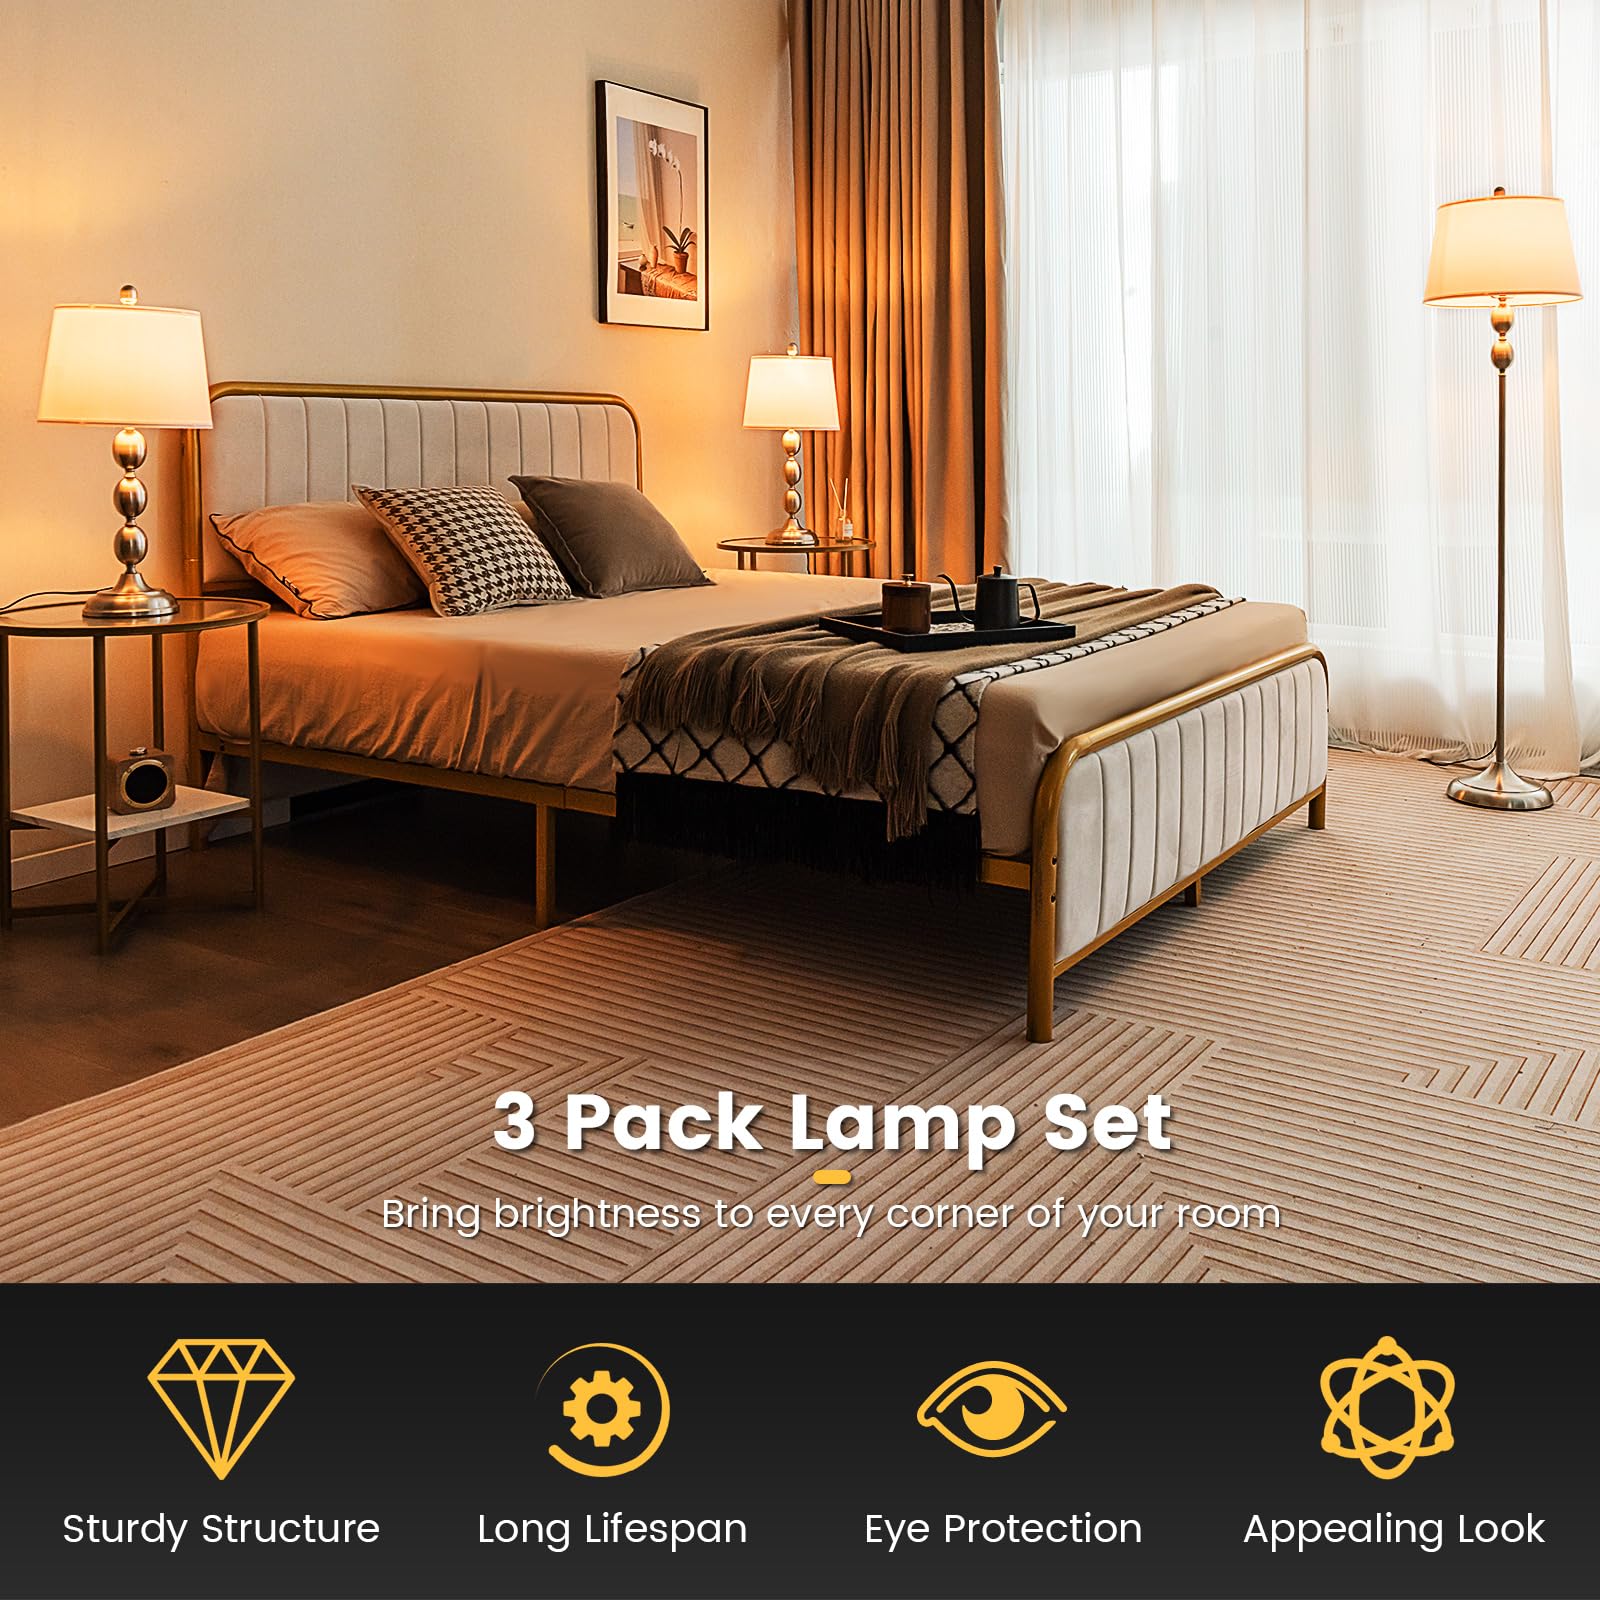 Giantex 3 Pack Lamp Set